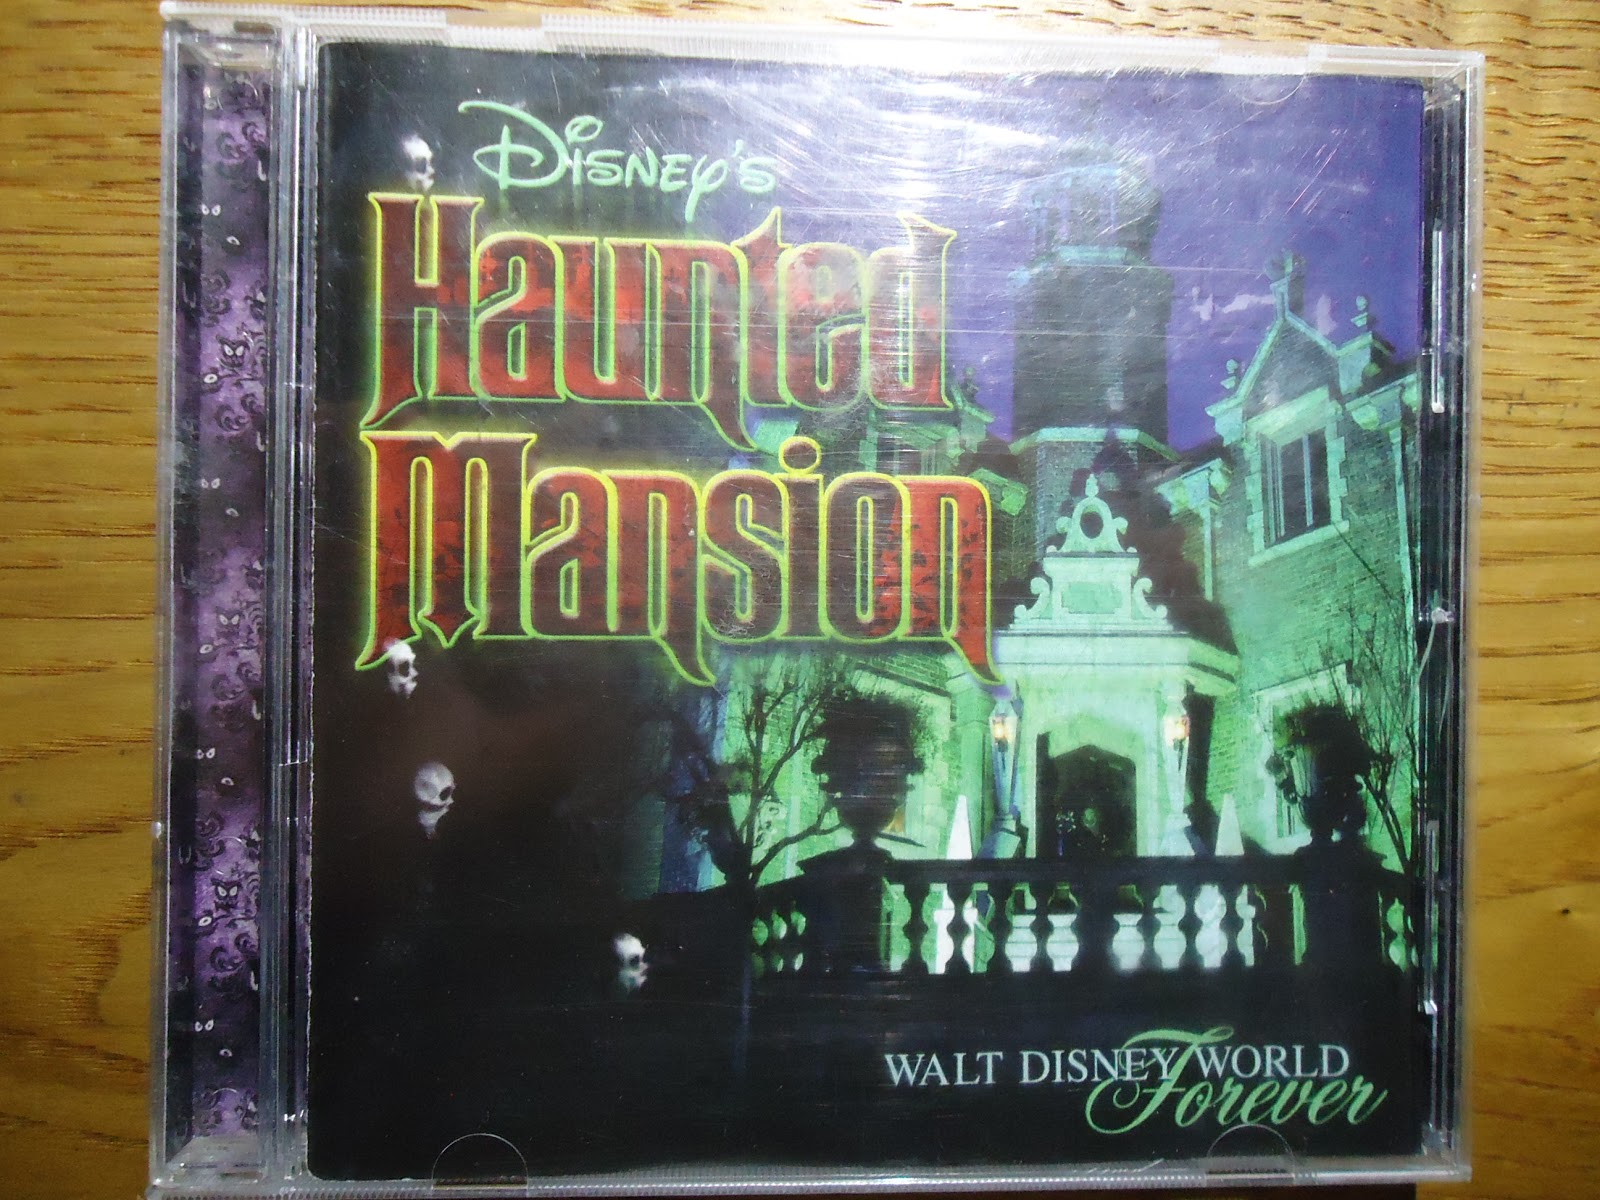 ディズニーの激レアcd Tdl等アトラクションbgm Disney S Haunted Mansion ホーンテッドマンション を買ってみた ぼくのケチリッチな節約日記